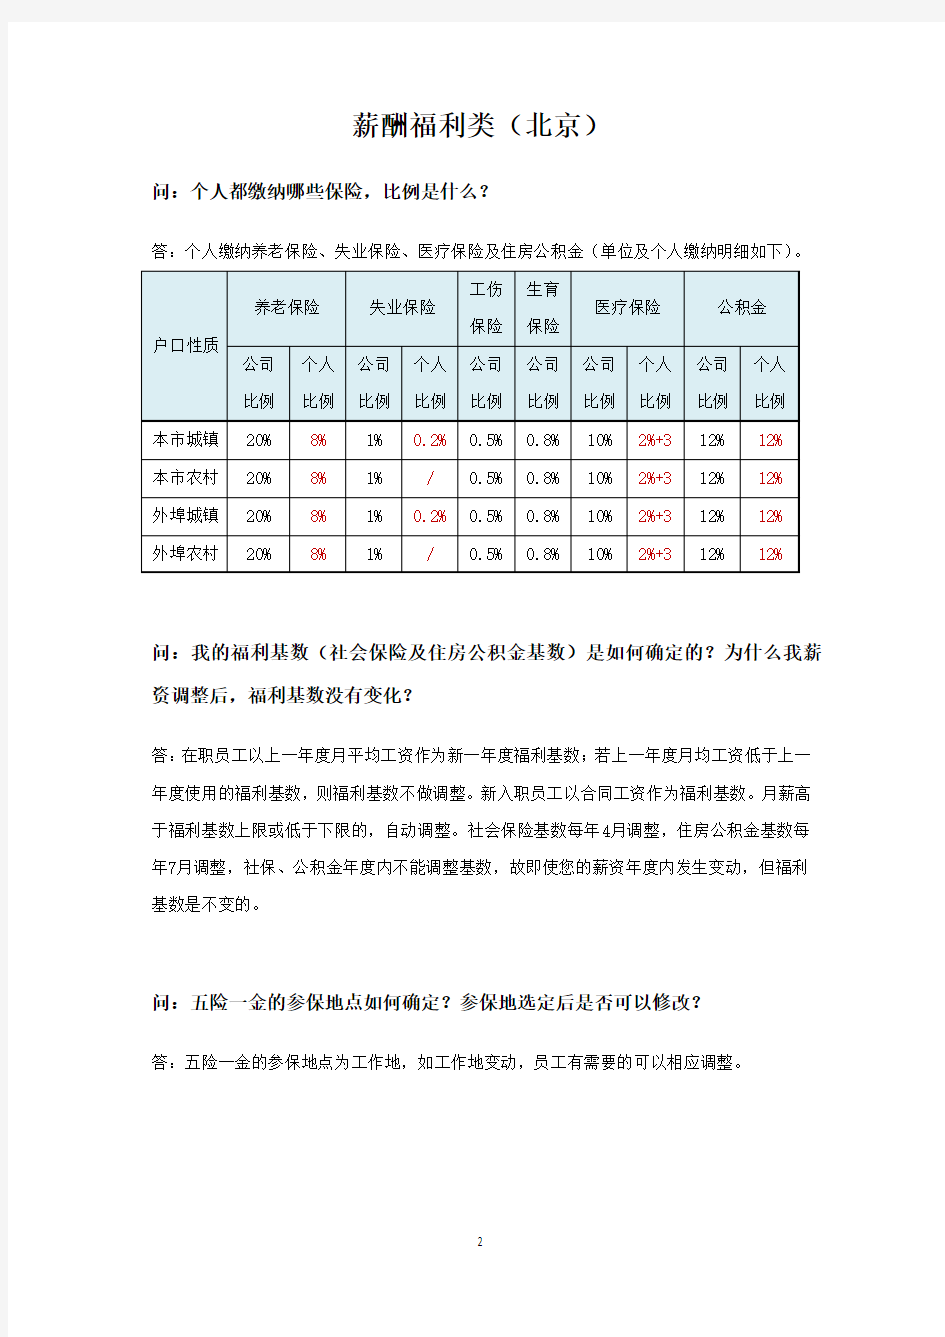 员工HR业务办理指导手册(北京)